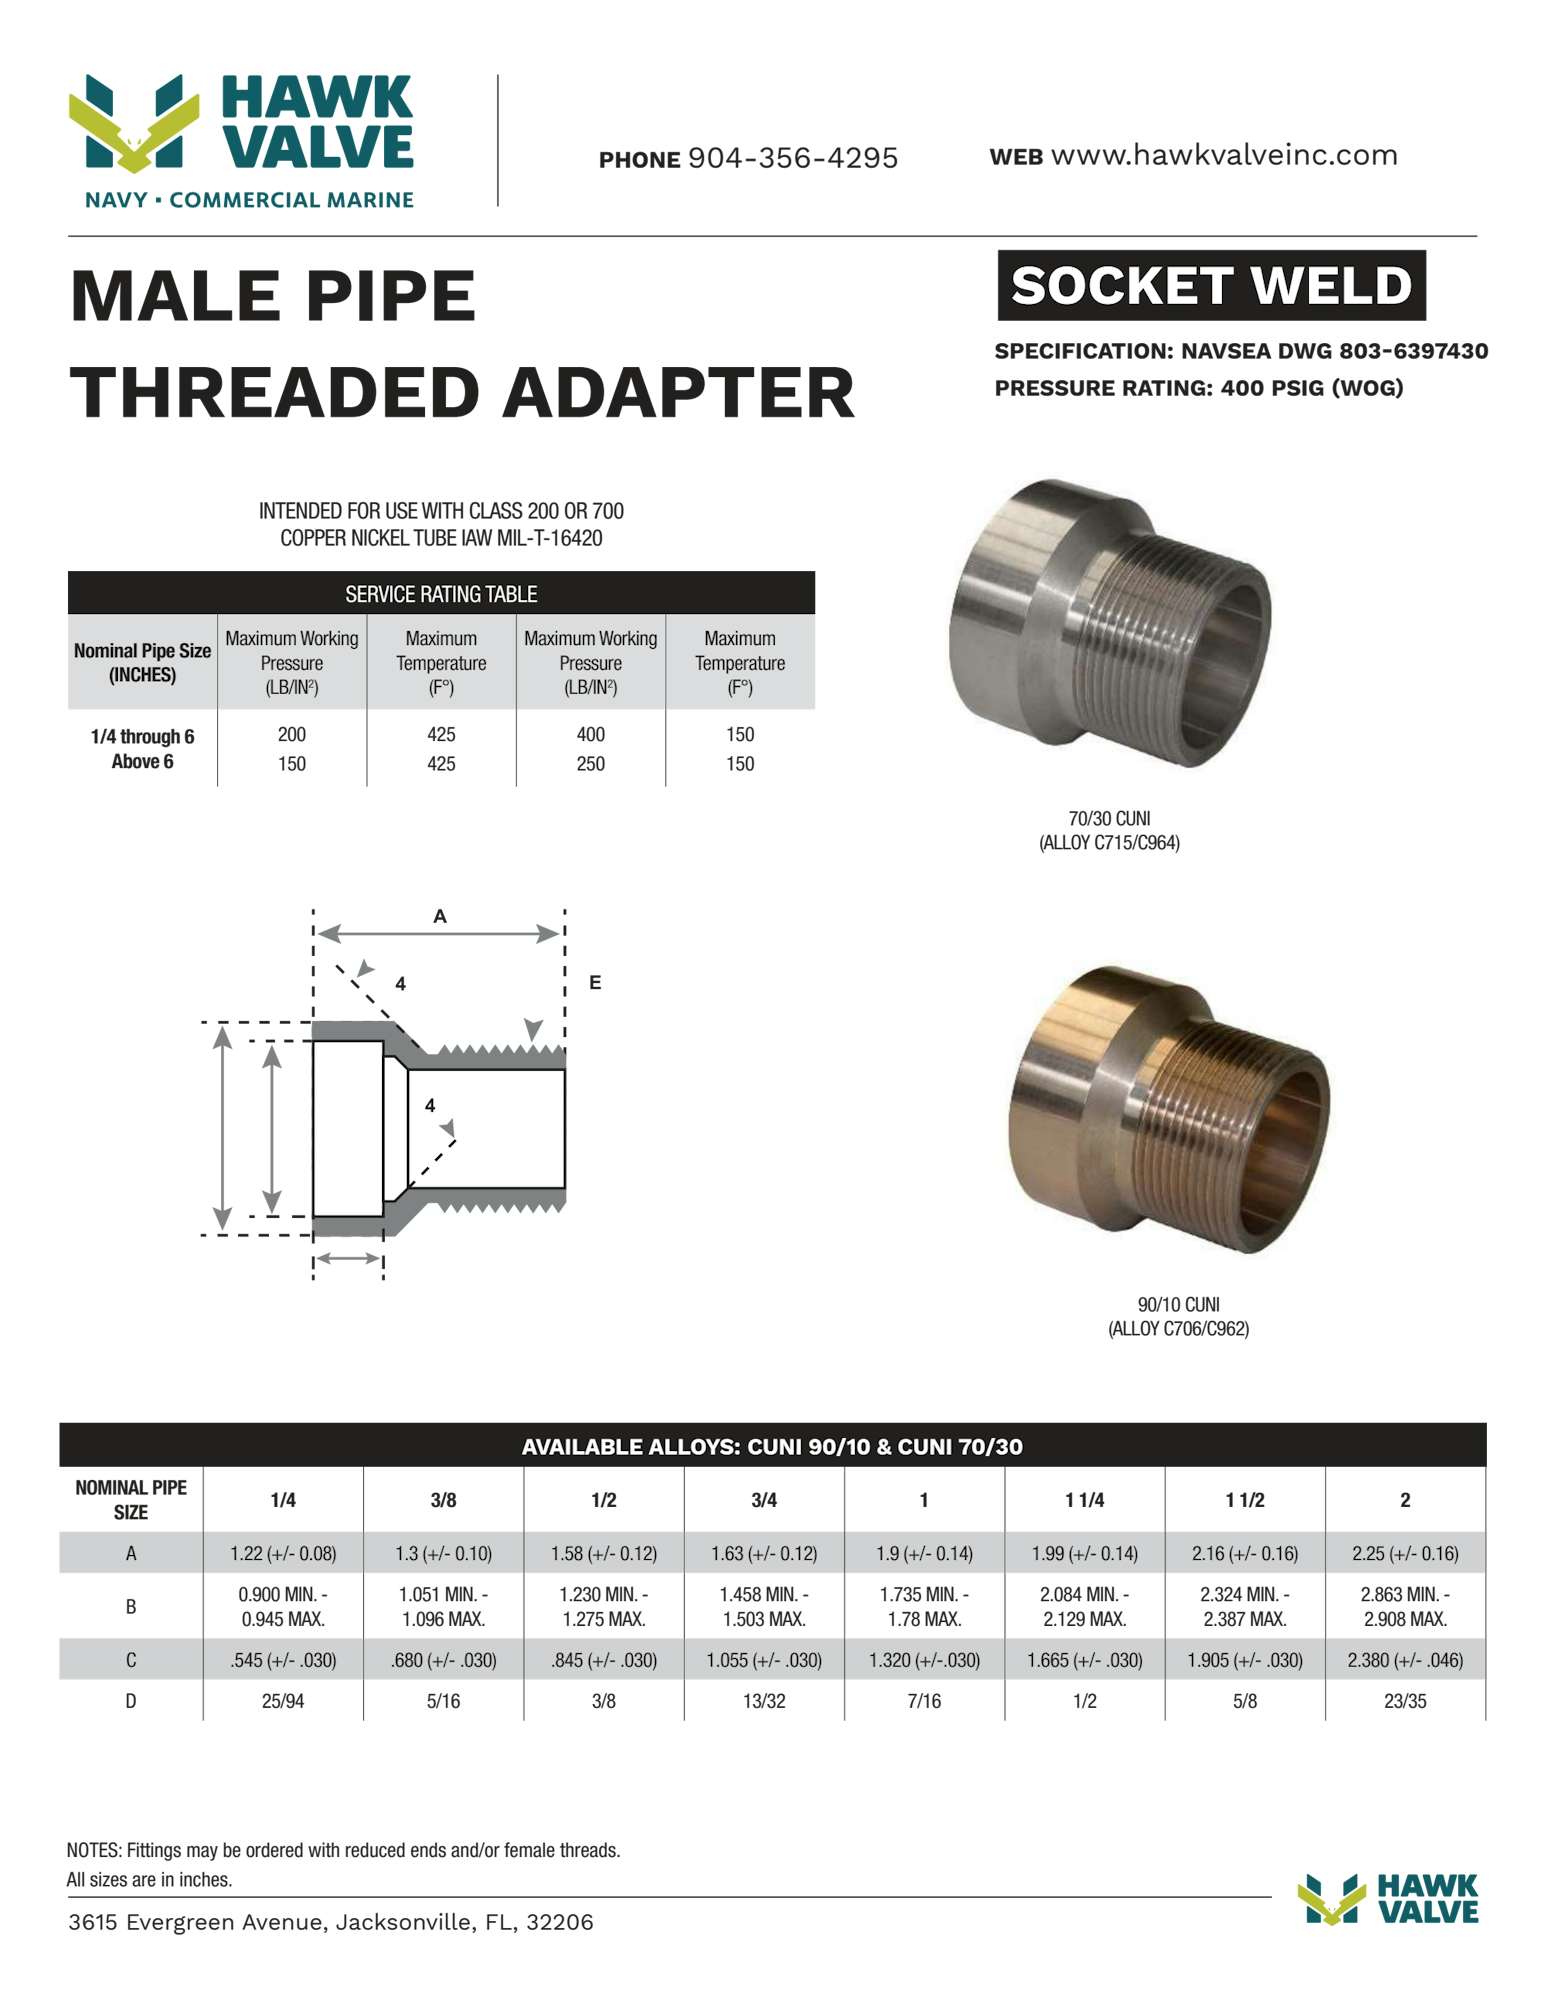 Socketweld-MPT-Adap.pdf